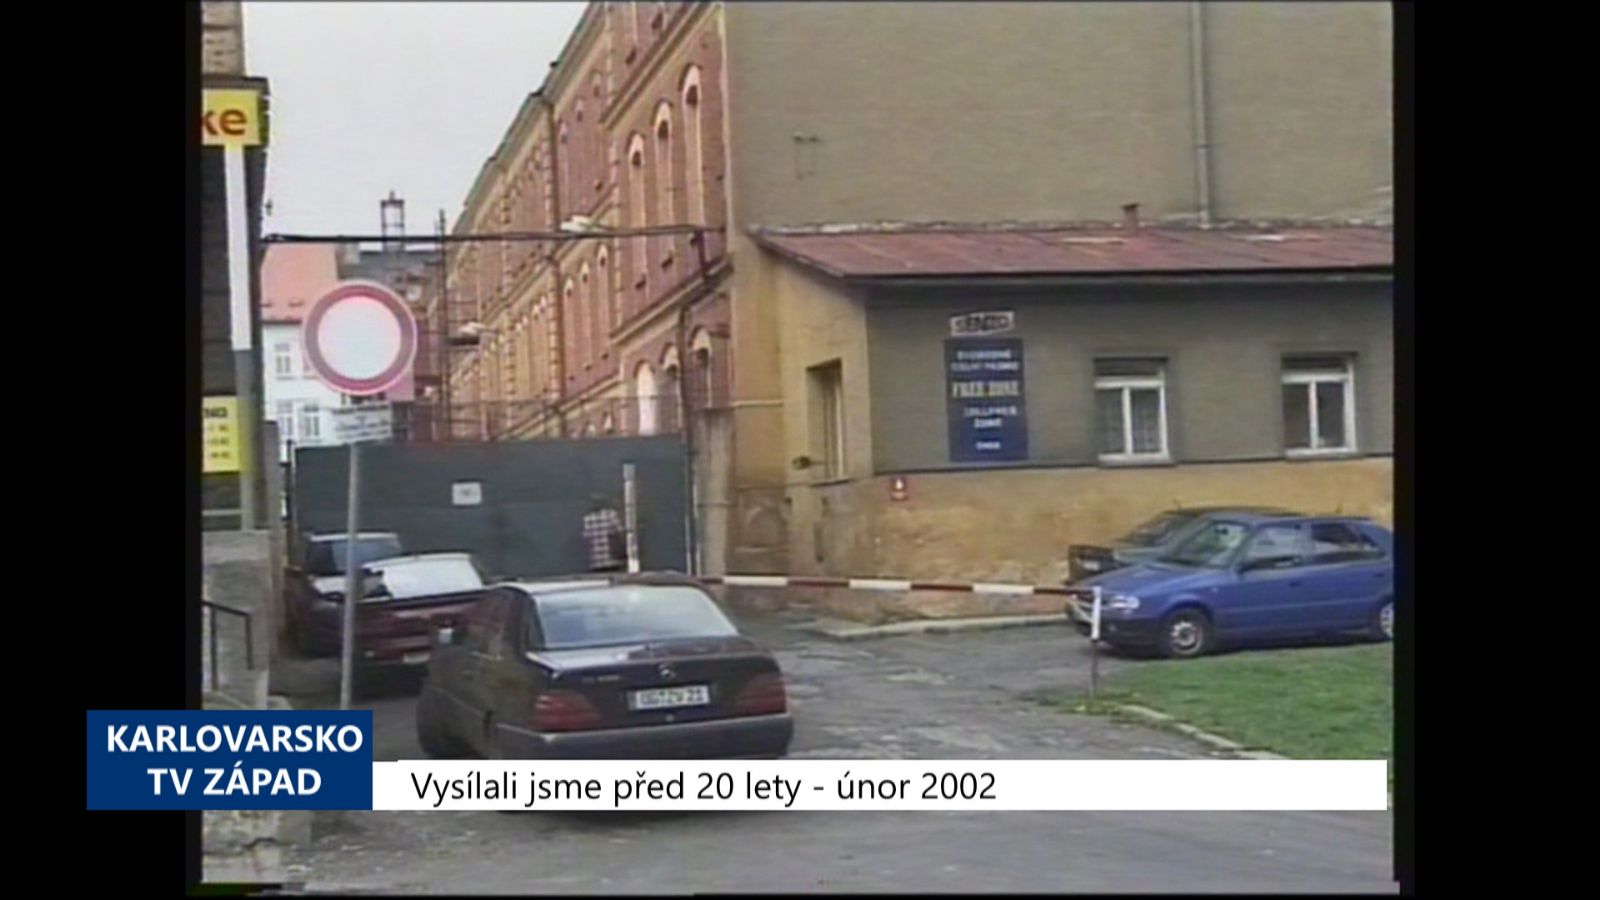 2002 – Cheb: Město zvažuje výpověď nájmu bezcelní zóně Senzo (TV Západ)